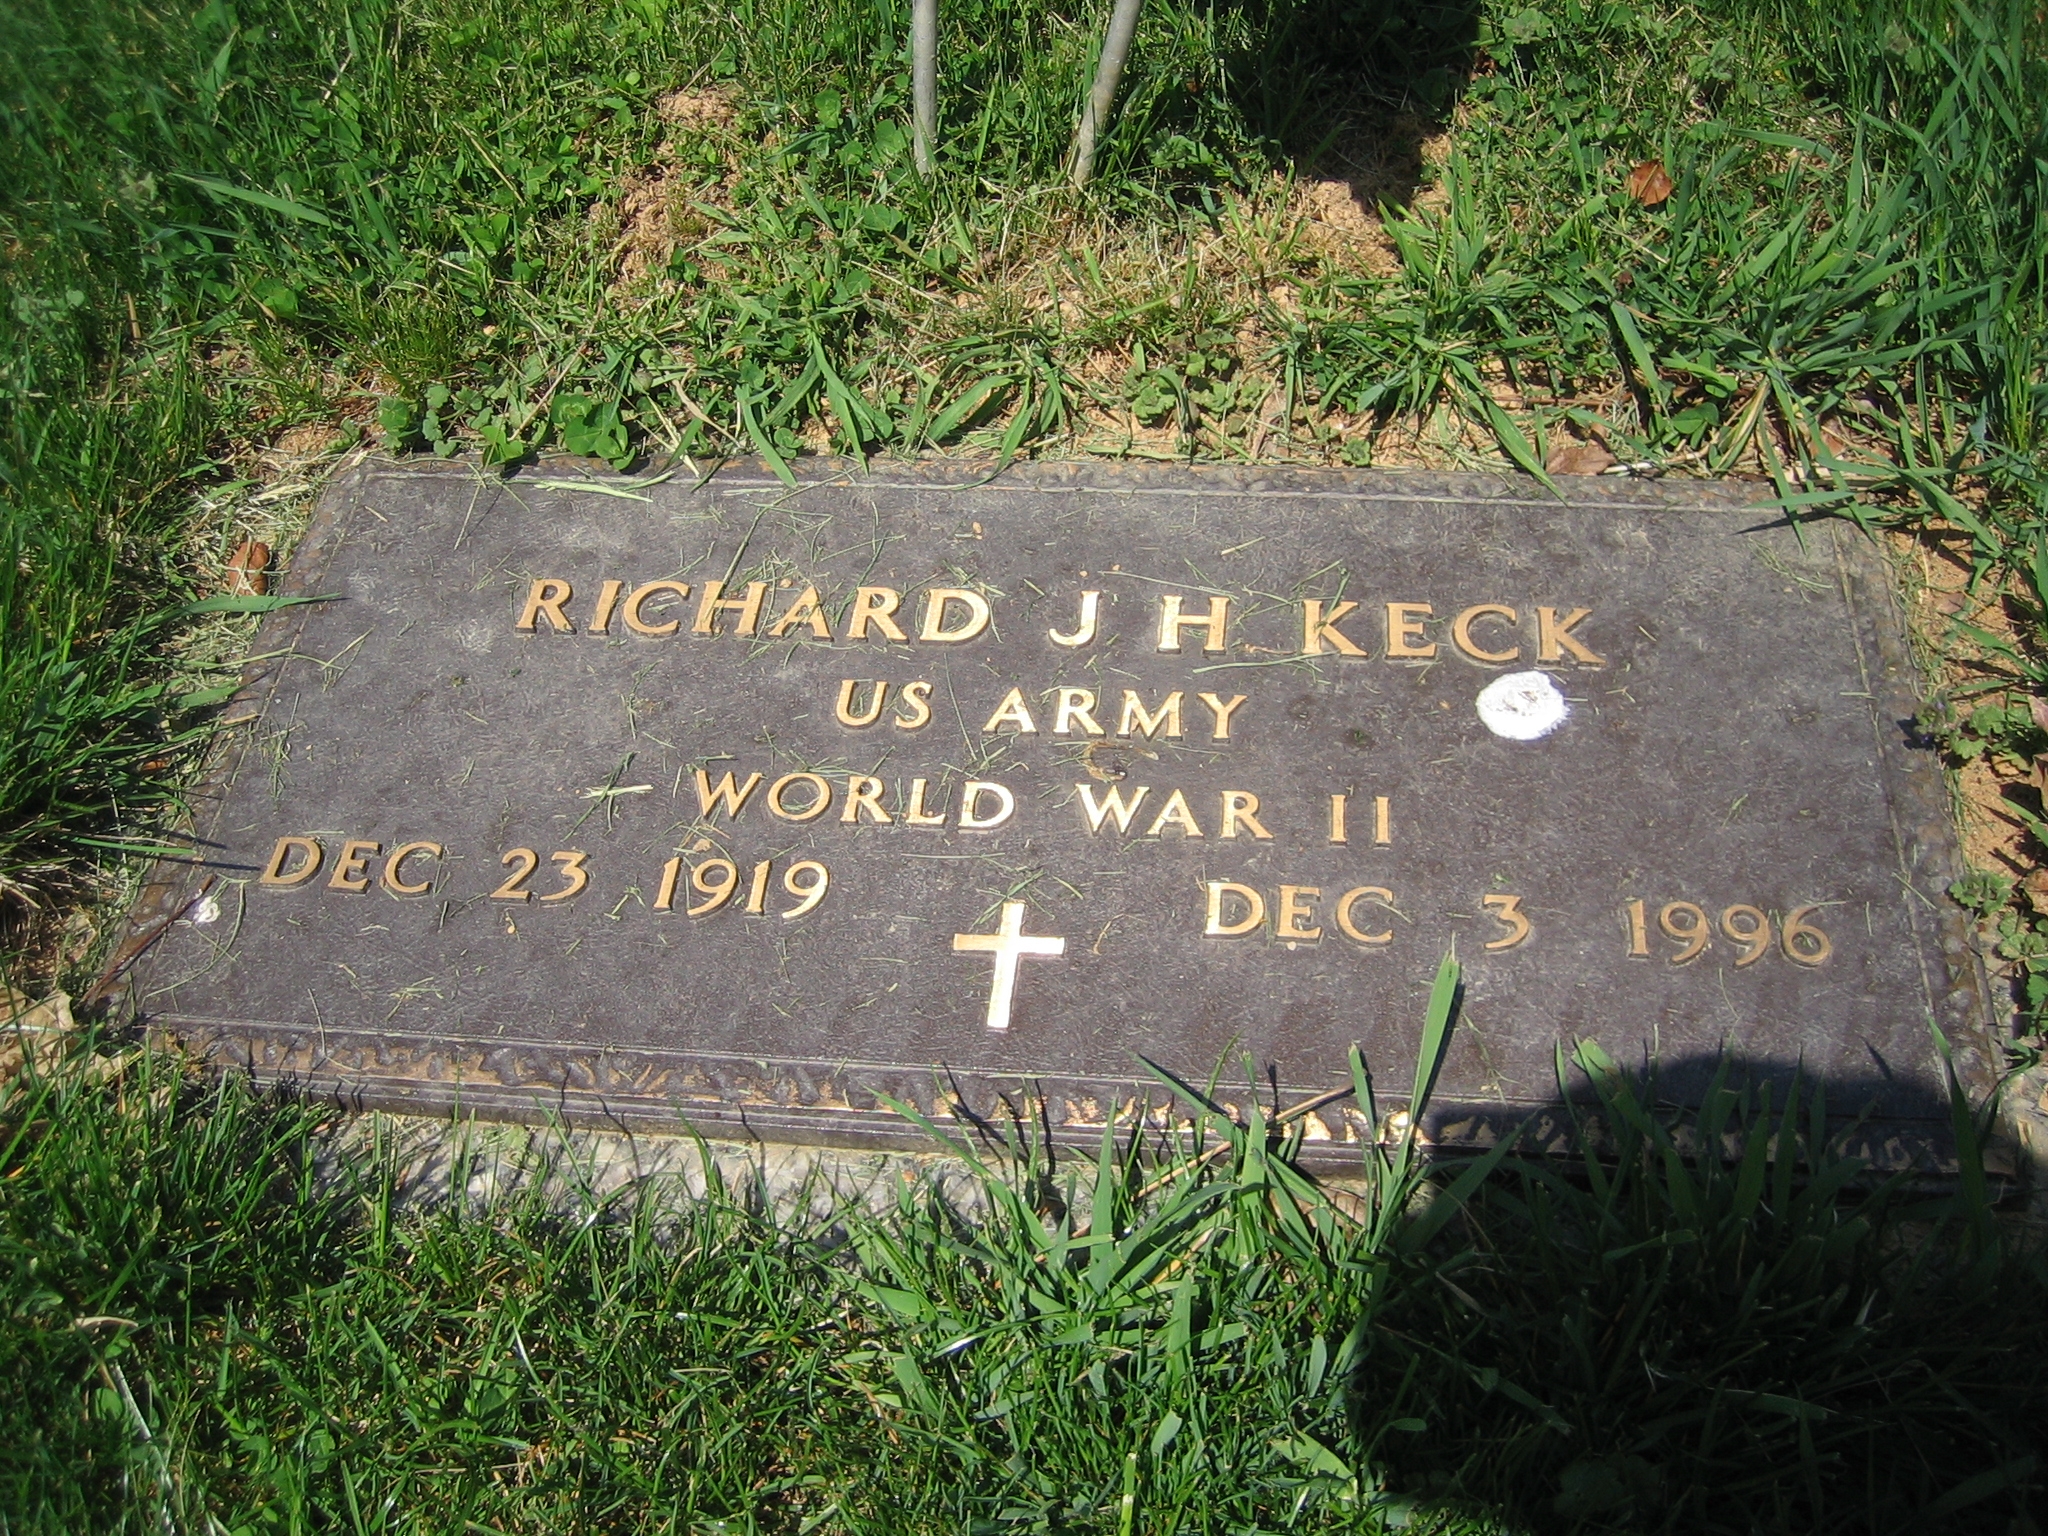 Richard J Keck gravesite